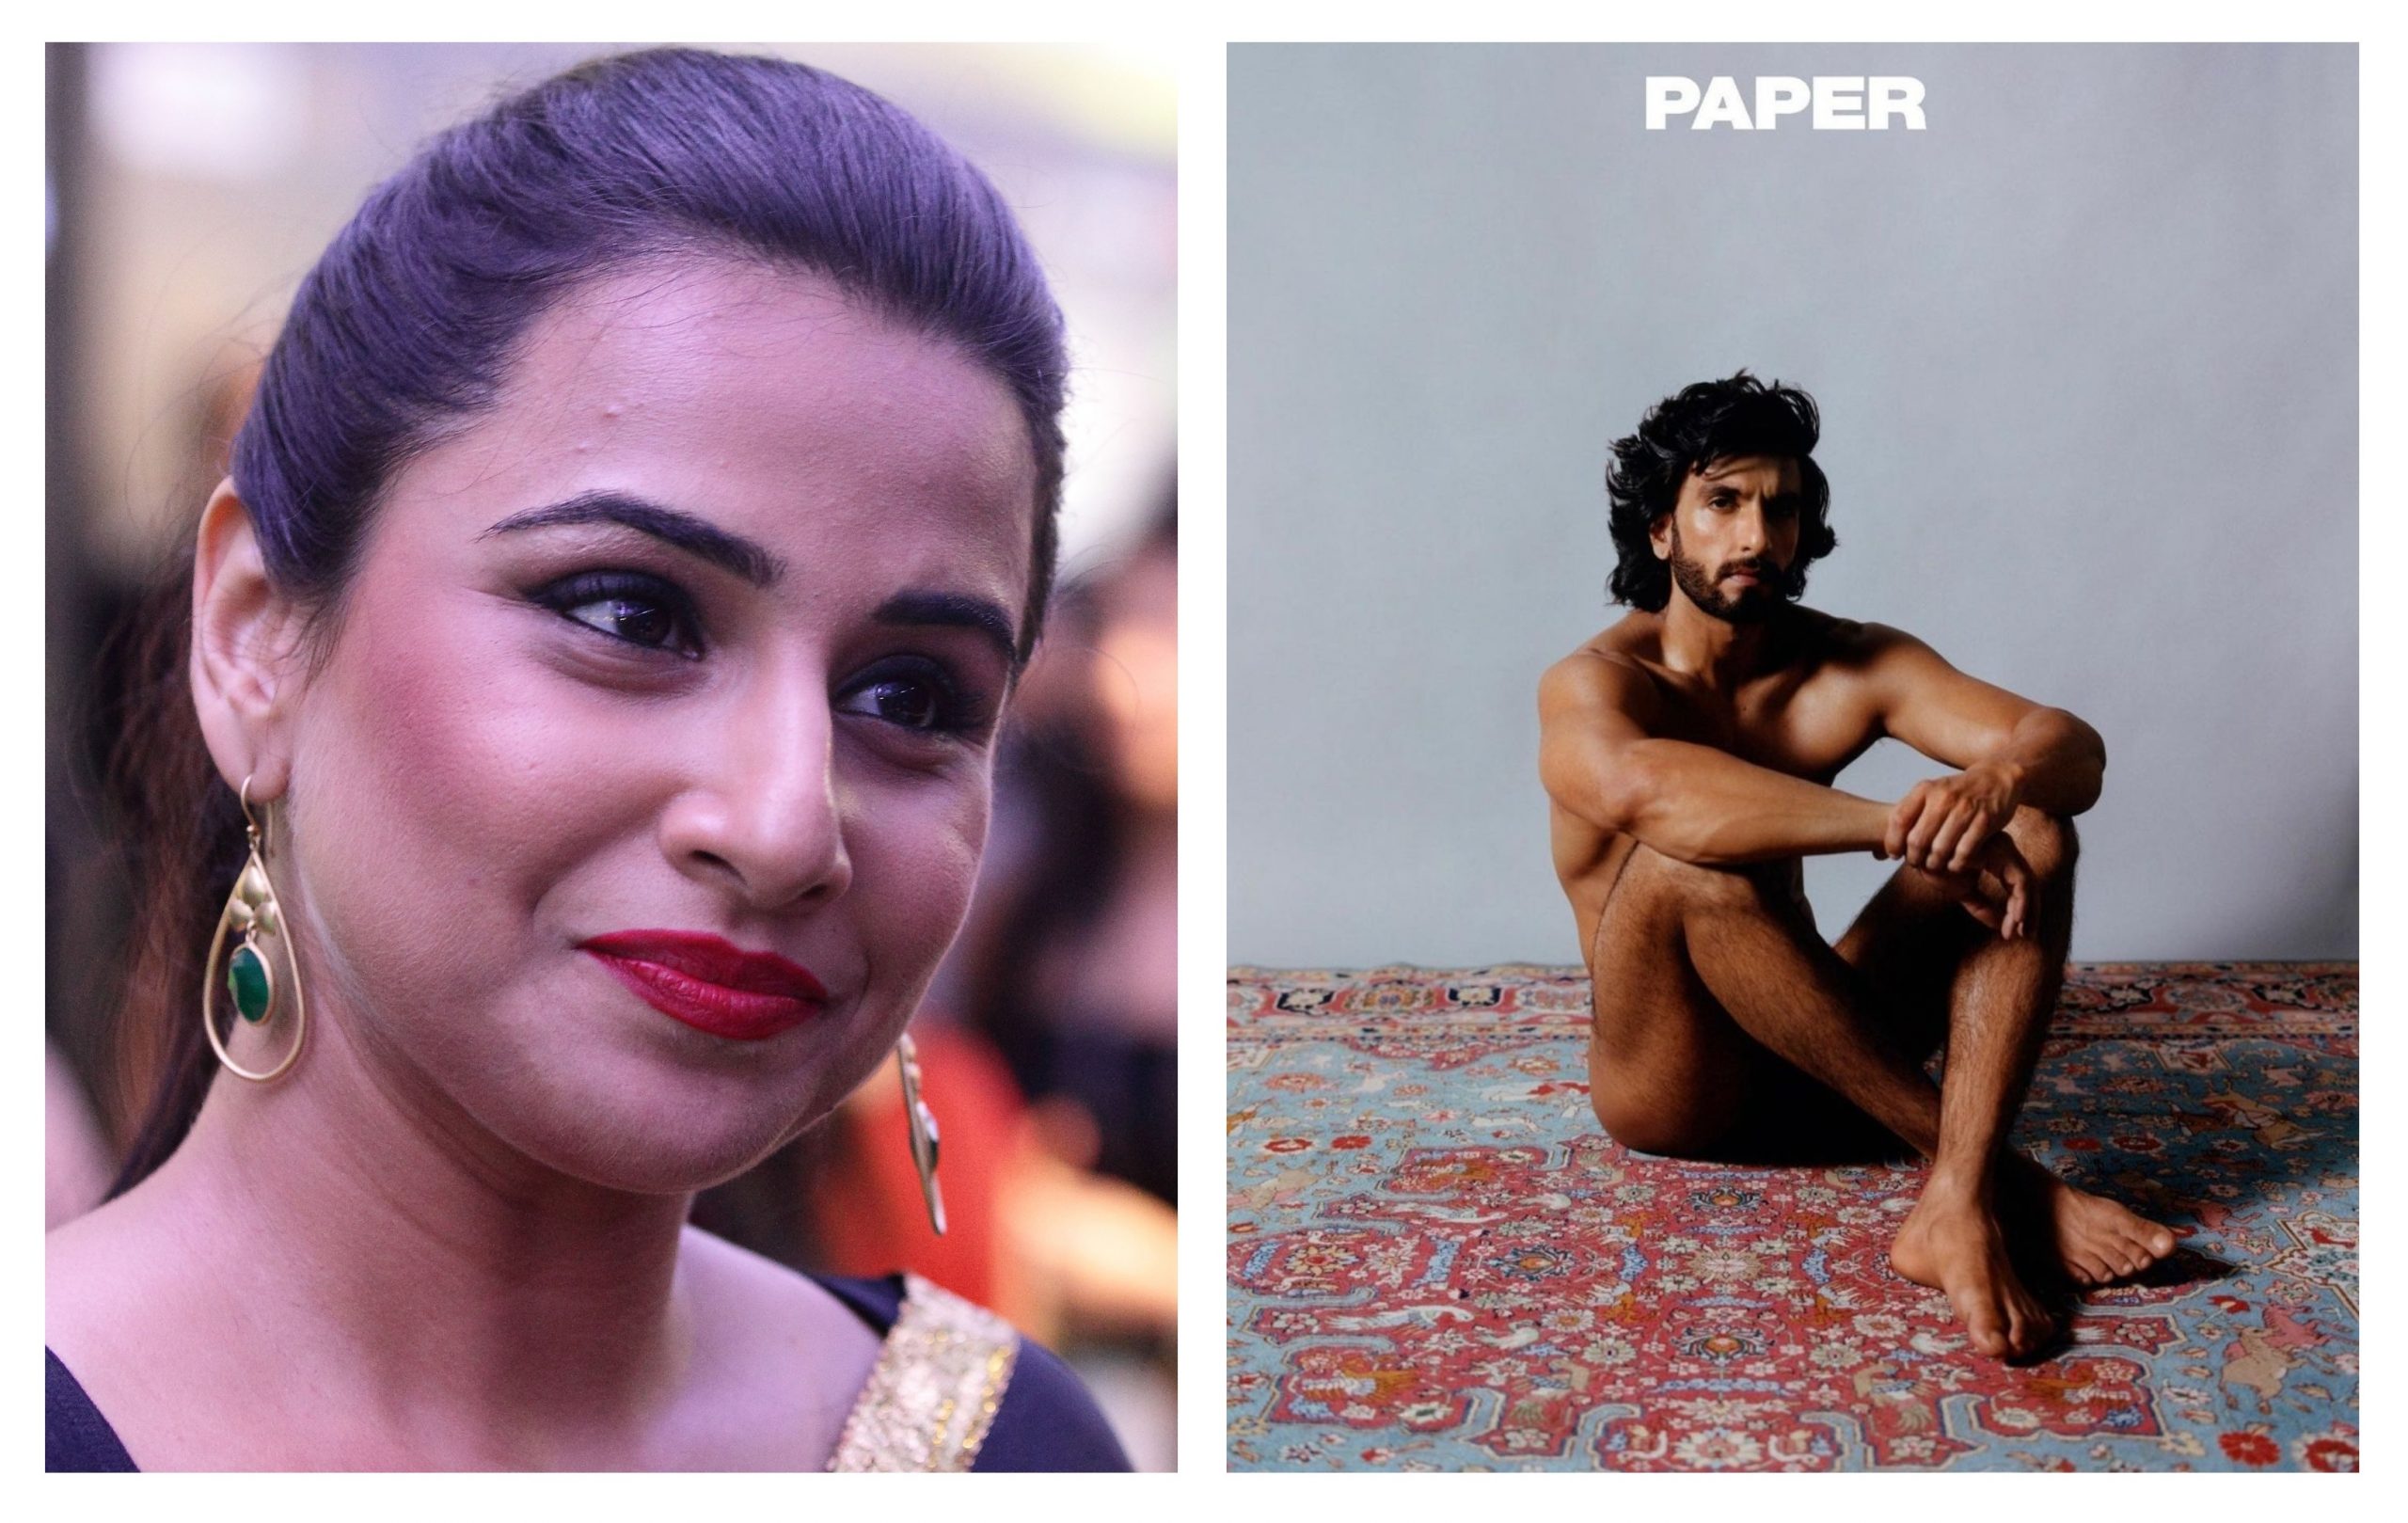 Let us also feast our eyes': Vidya Balan on Ranveer Singh's nude photoshoot  - Indiaweekly